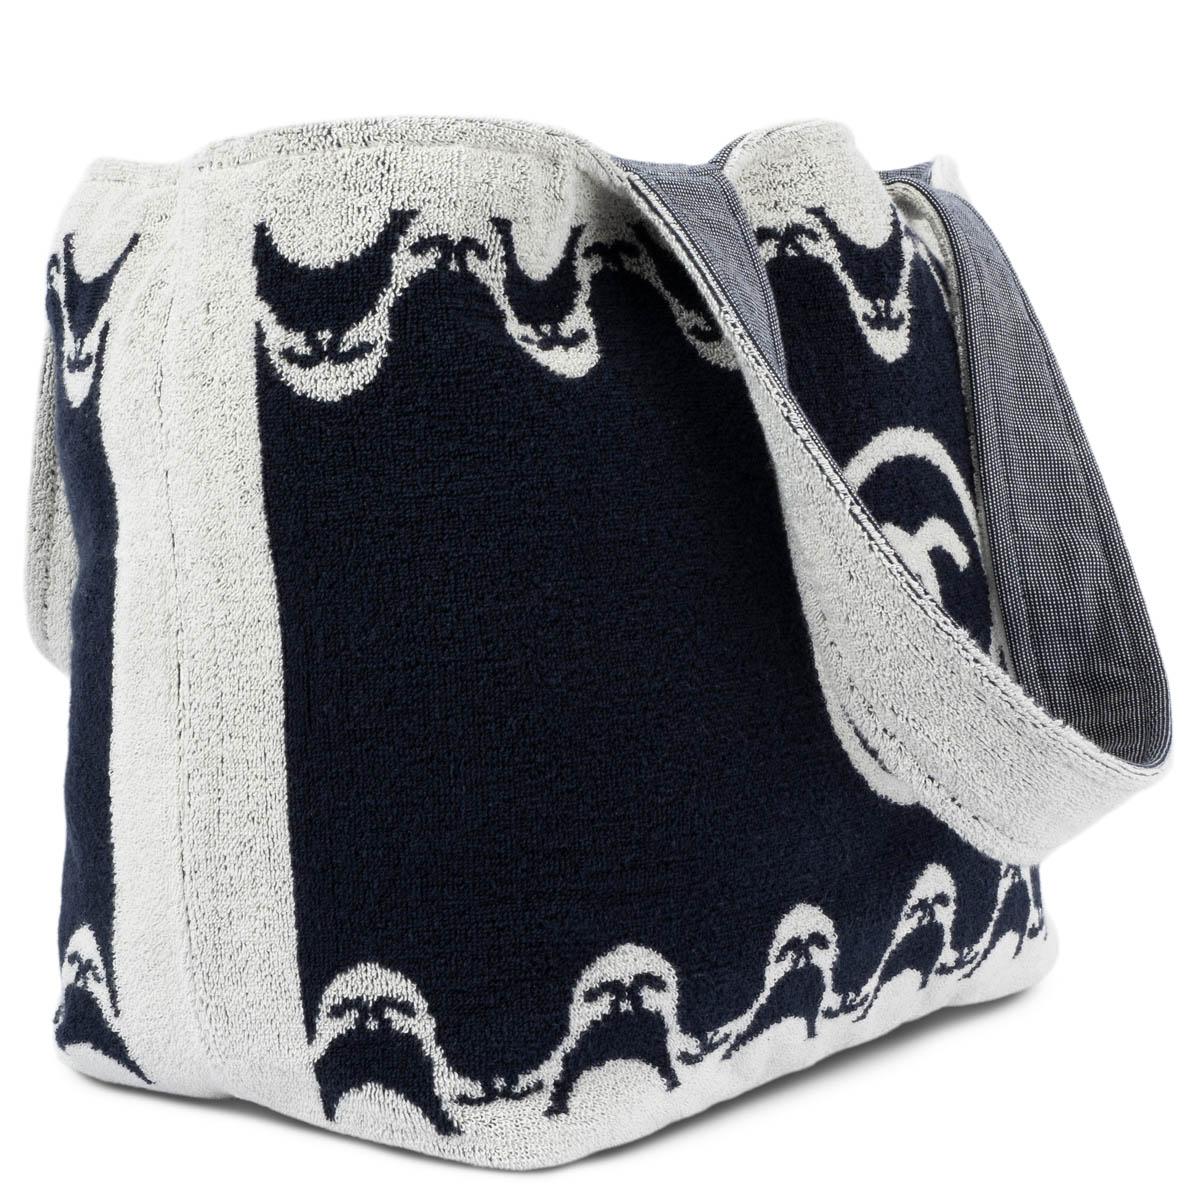 100% authentische Chanel 2021 Frottee-Strandtasche aus marineblauer und hellgrauer Baumwolle (100%). Gefüttert mit gepunktetem Canvas, mit zwei flachen Taschen auf der Rückseite und einer abnehmbaren Tasche mit Reißverschluss. Die Tasche wird mit